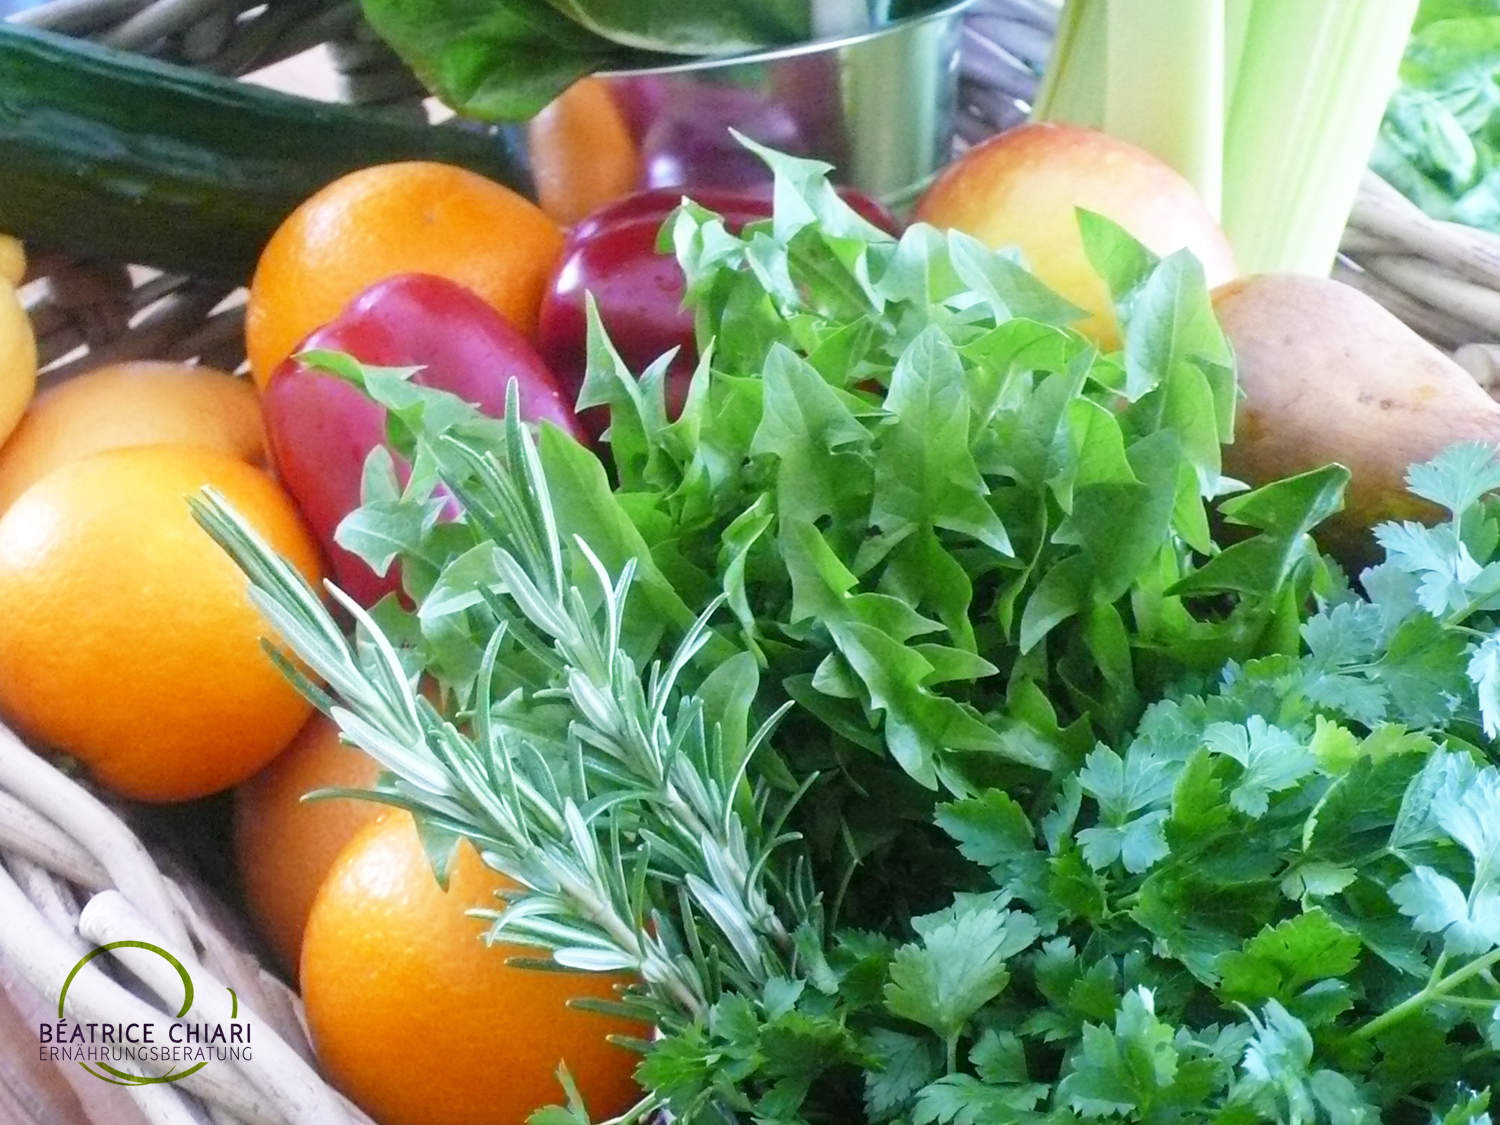 Grüne Smoohties, Green smoothies, gesunde Rohkost, Blattgemüse, Chlorophyll, natürliche Nahrungsergänzung, Salate und Kräuter, Workshop, Wildkräuter